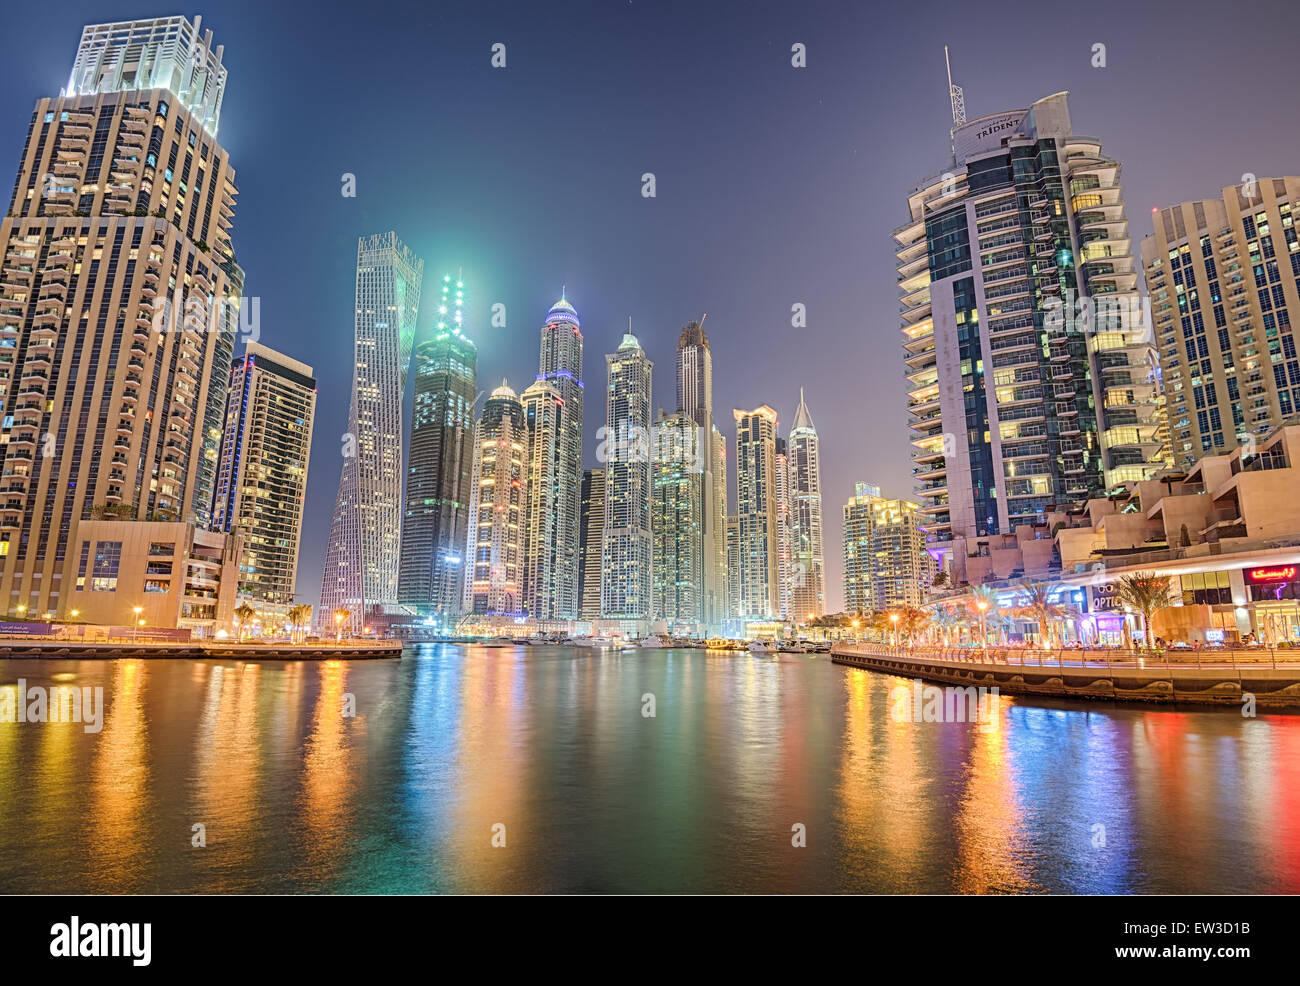 Les bâtiments modernes à Dubaï Marina district de nuit. Traitement HDR. Banque D'Images